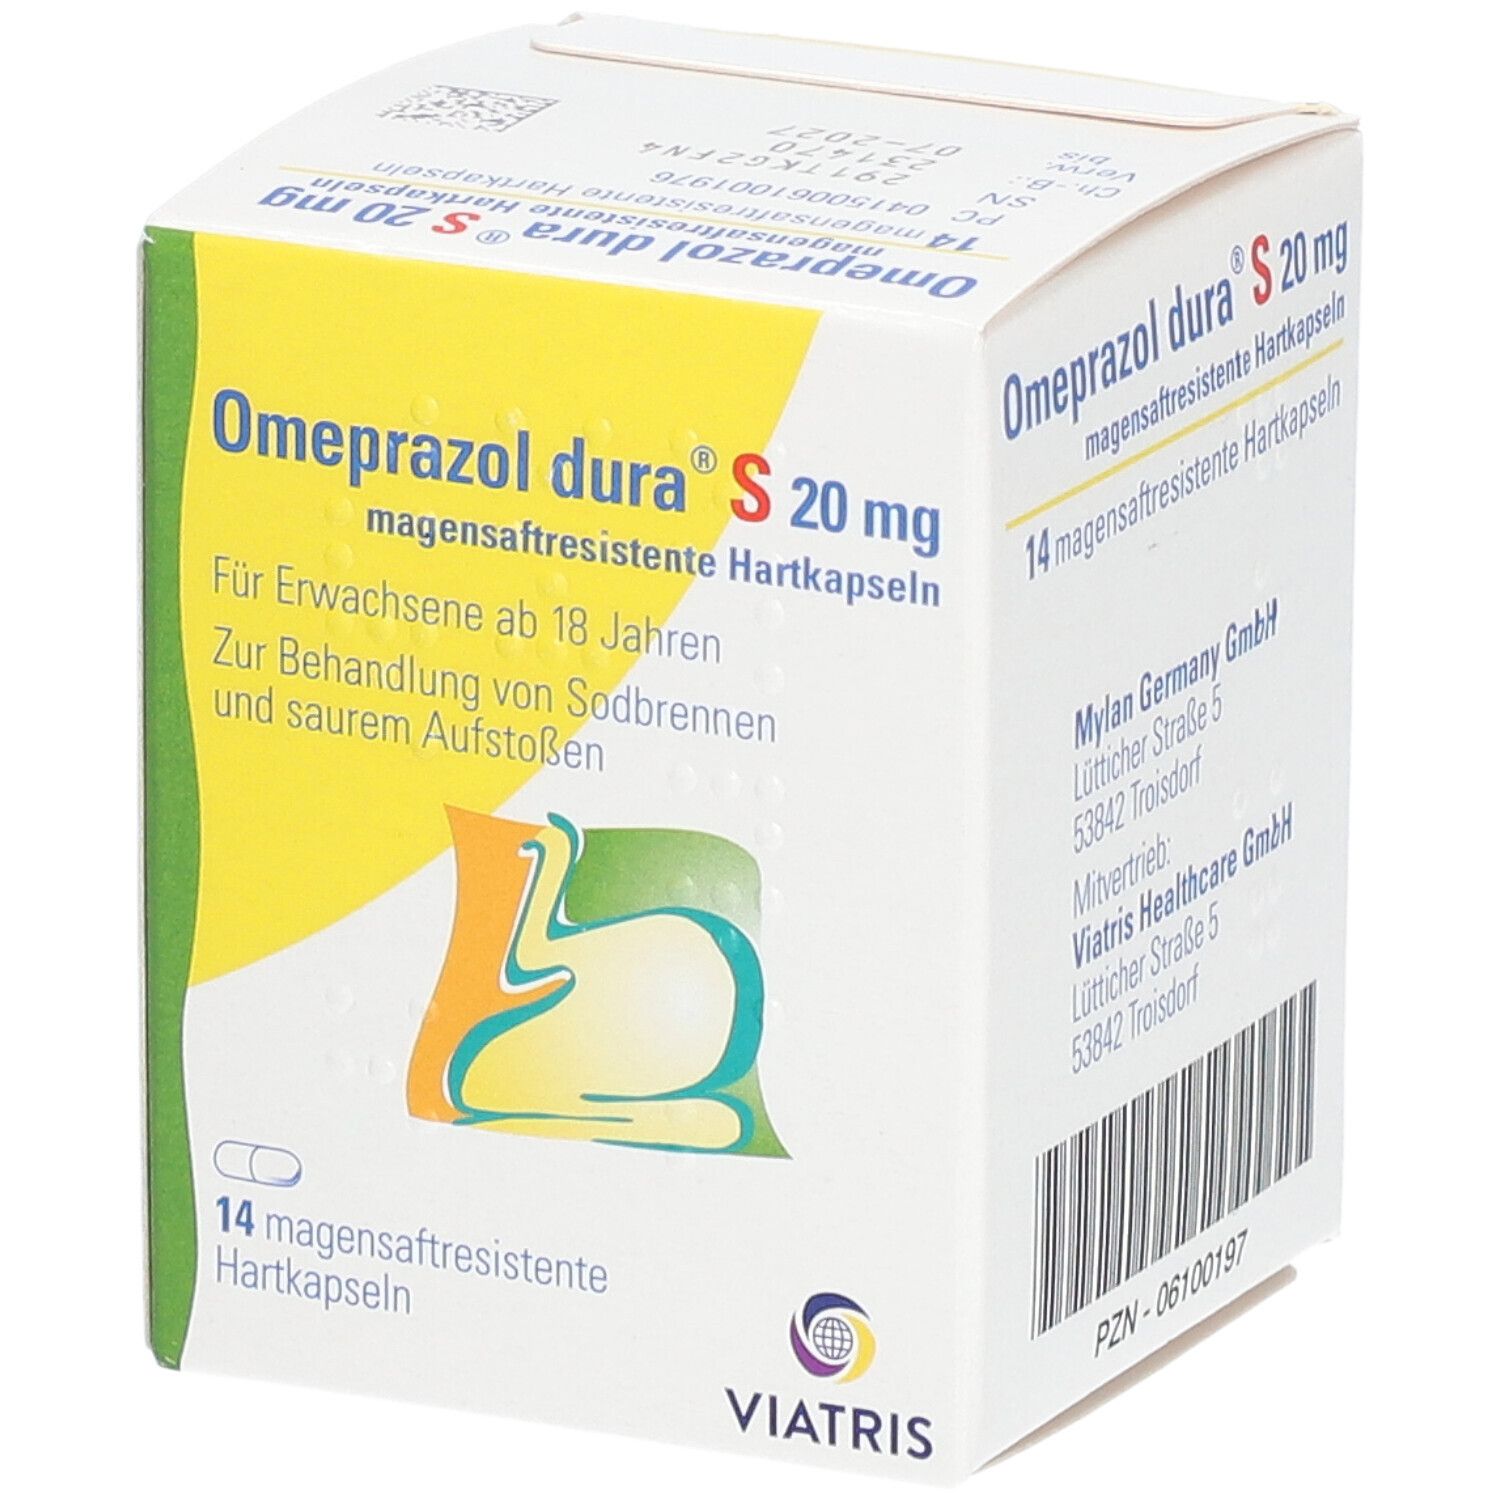 Omeprazol dura® S 20 mg Kapseln